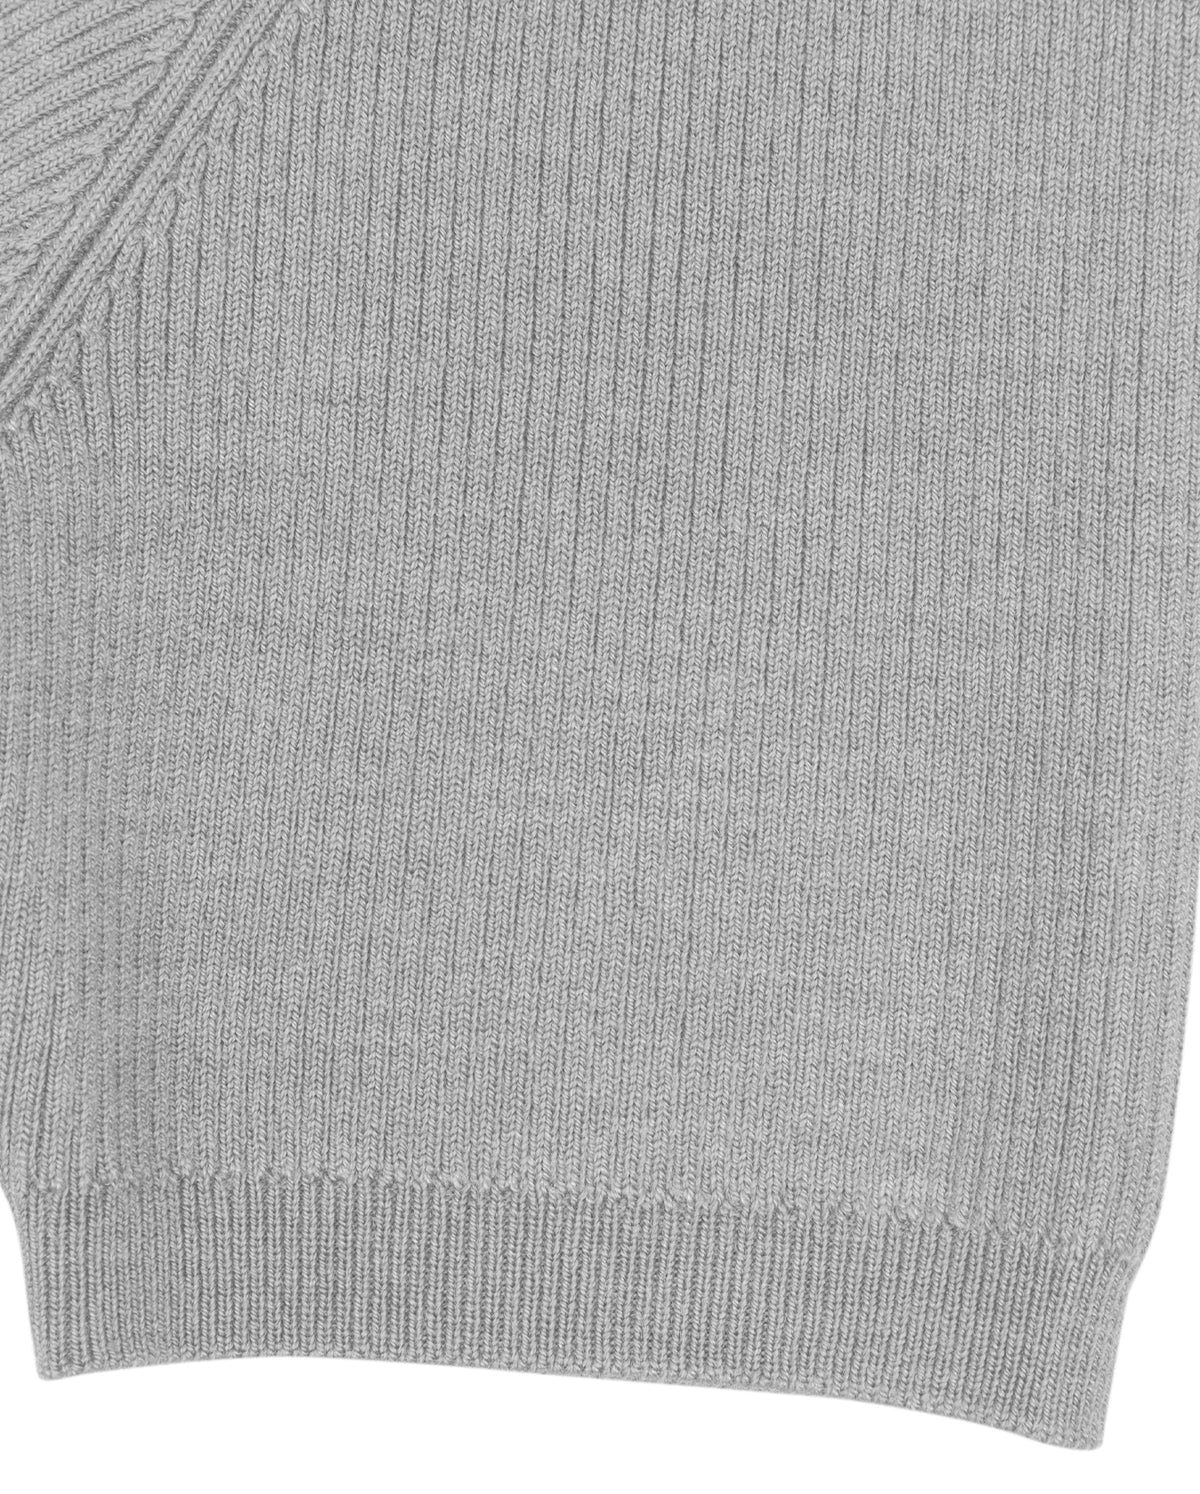 Basics Turtleneck Sweater